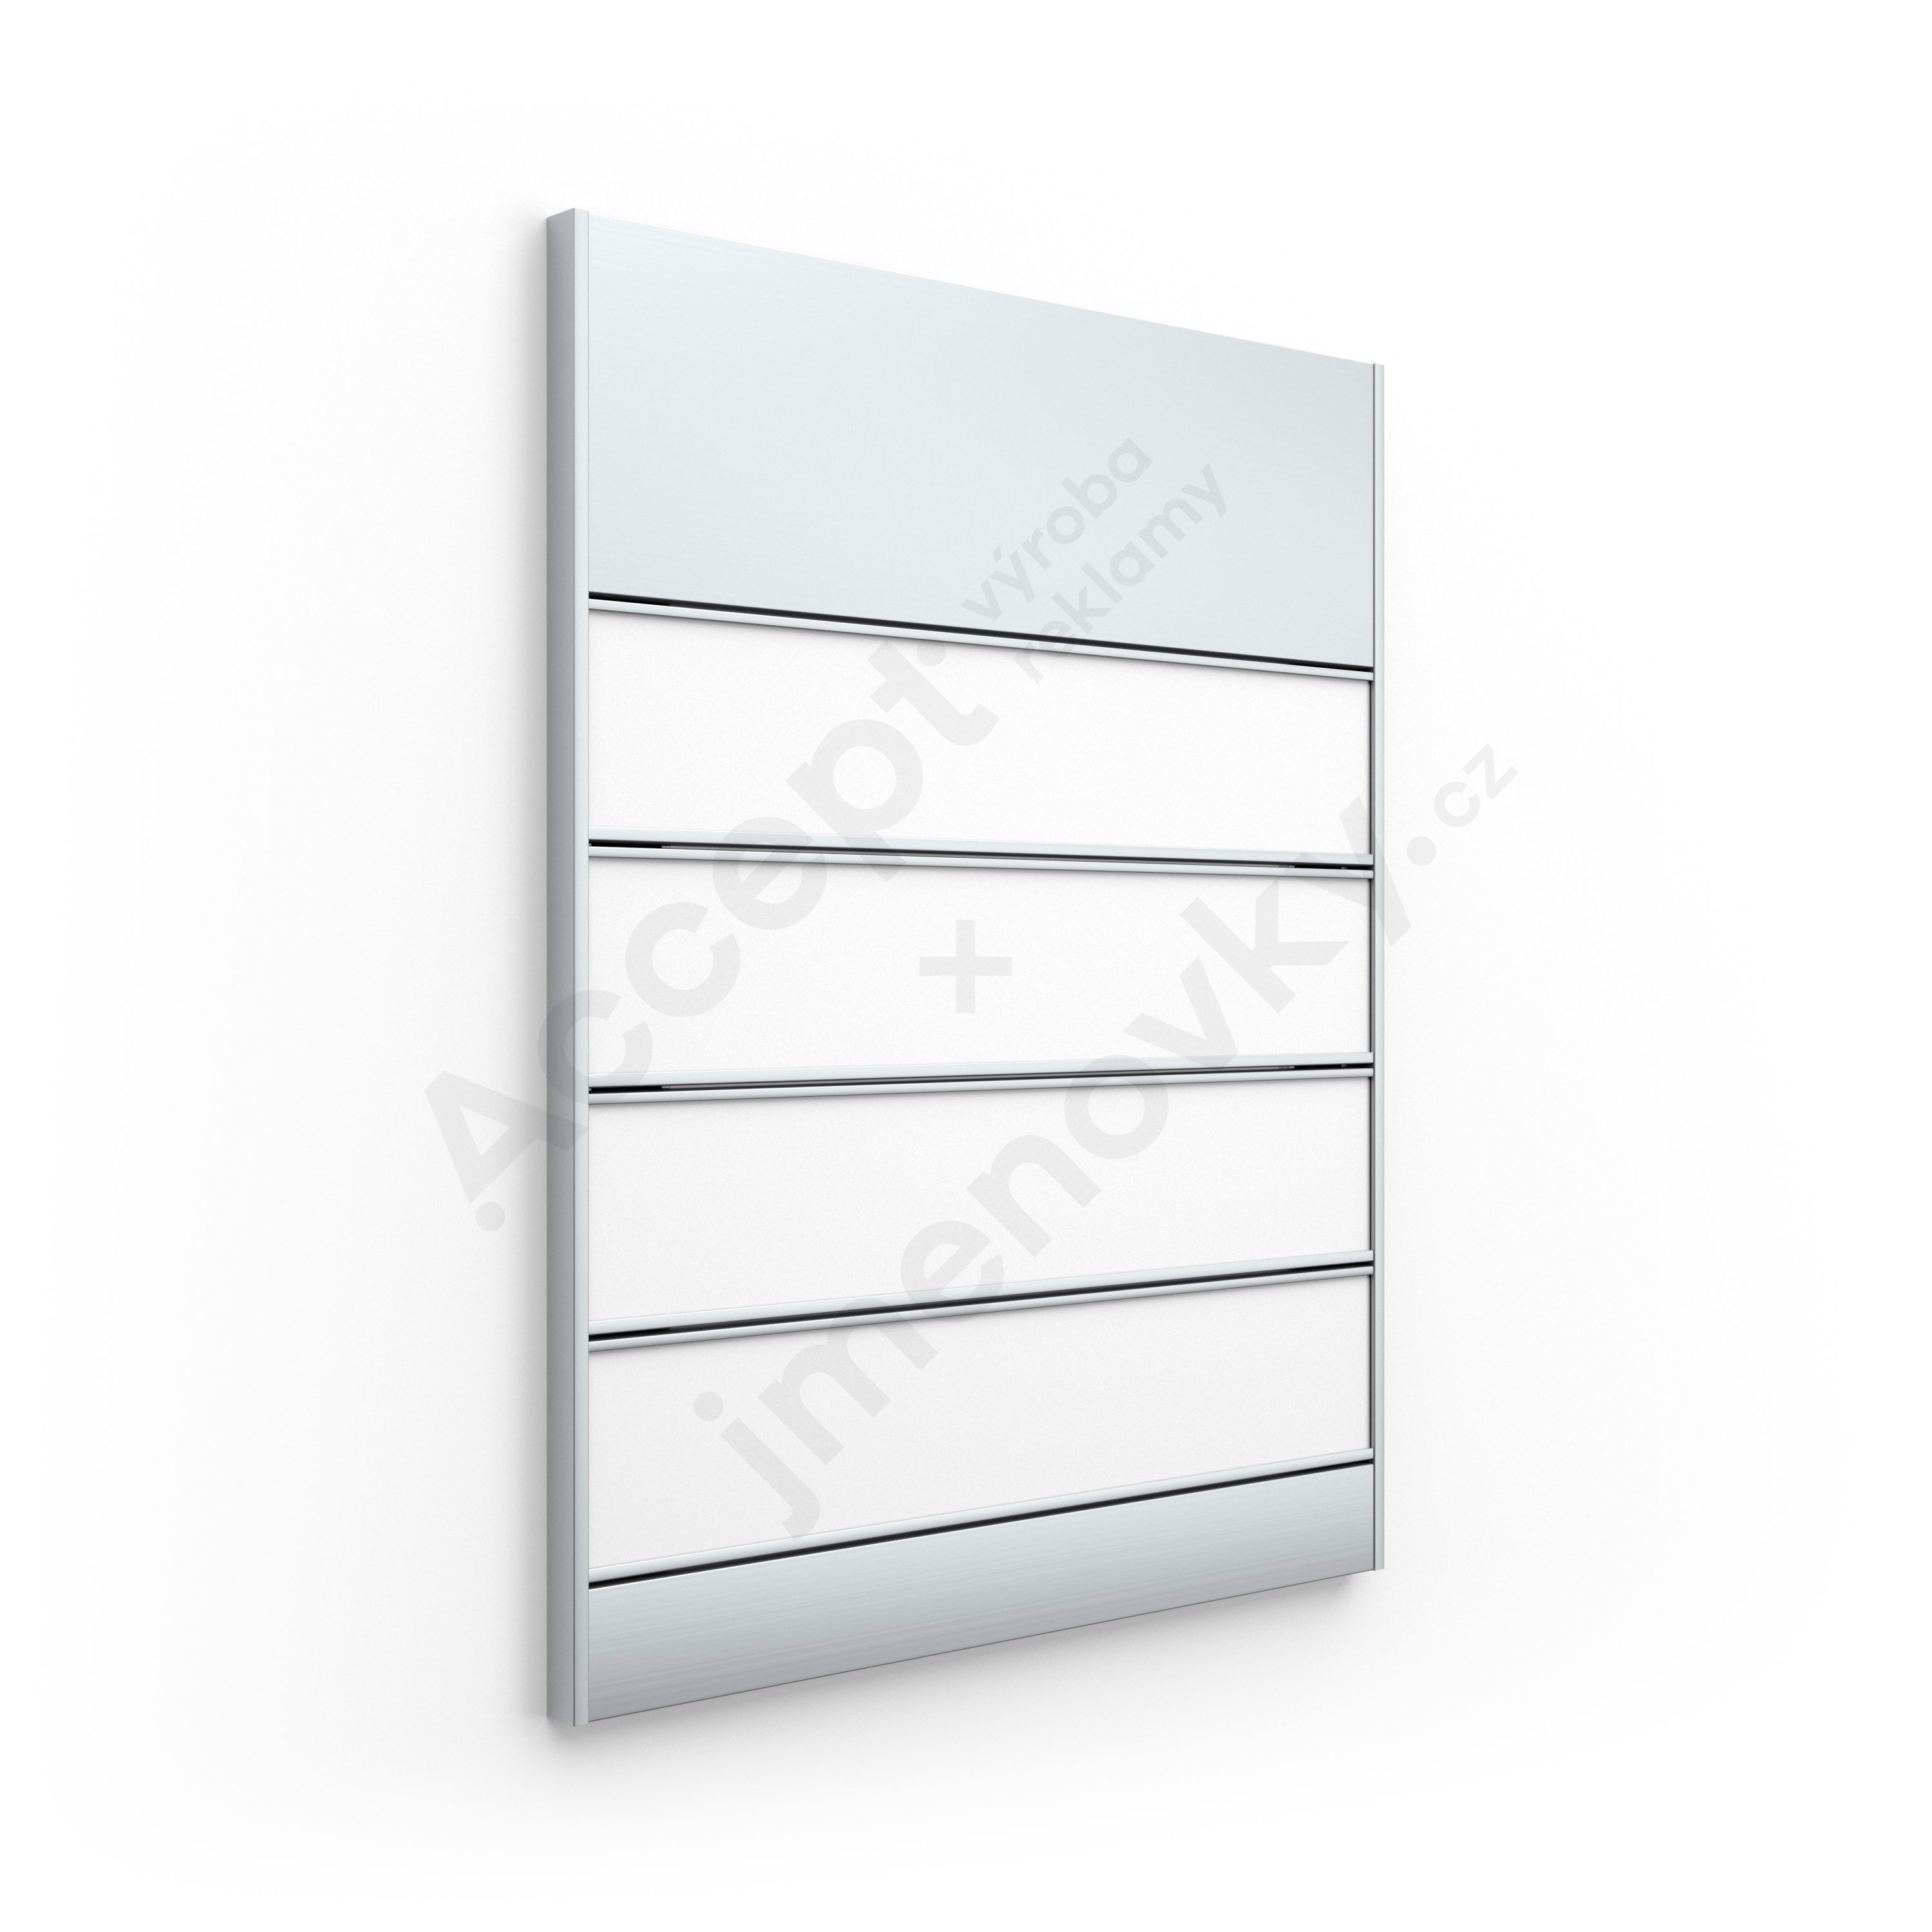 ACCEPT Dveřní tabulka SlimSlatz (zásuvný systém, rovné bočnice, 187 x 245 mm) - stříbrná tabulka